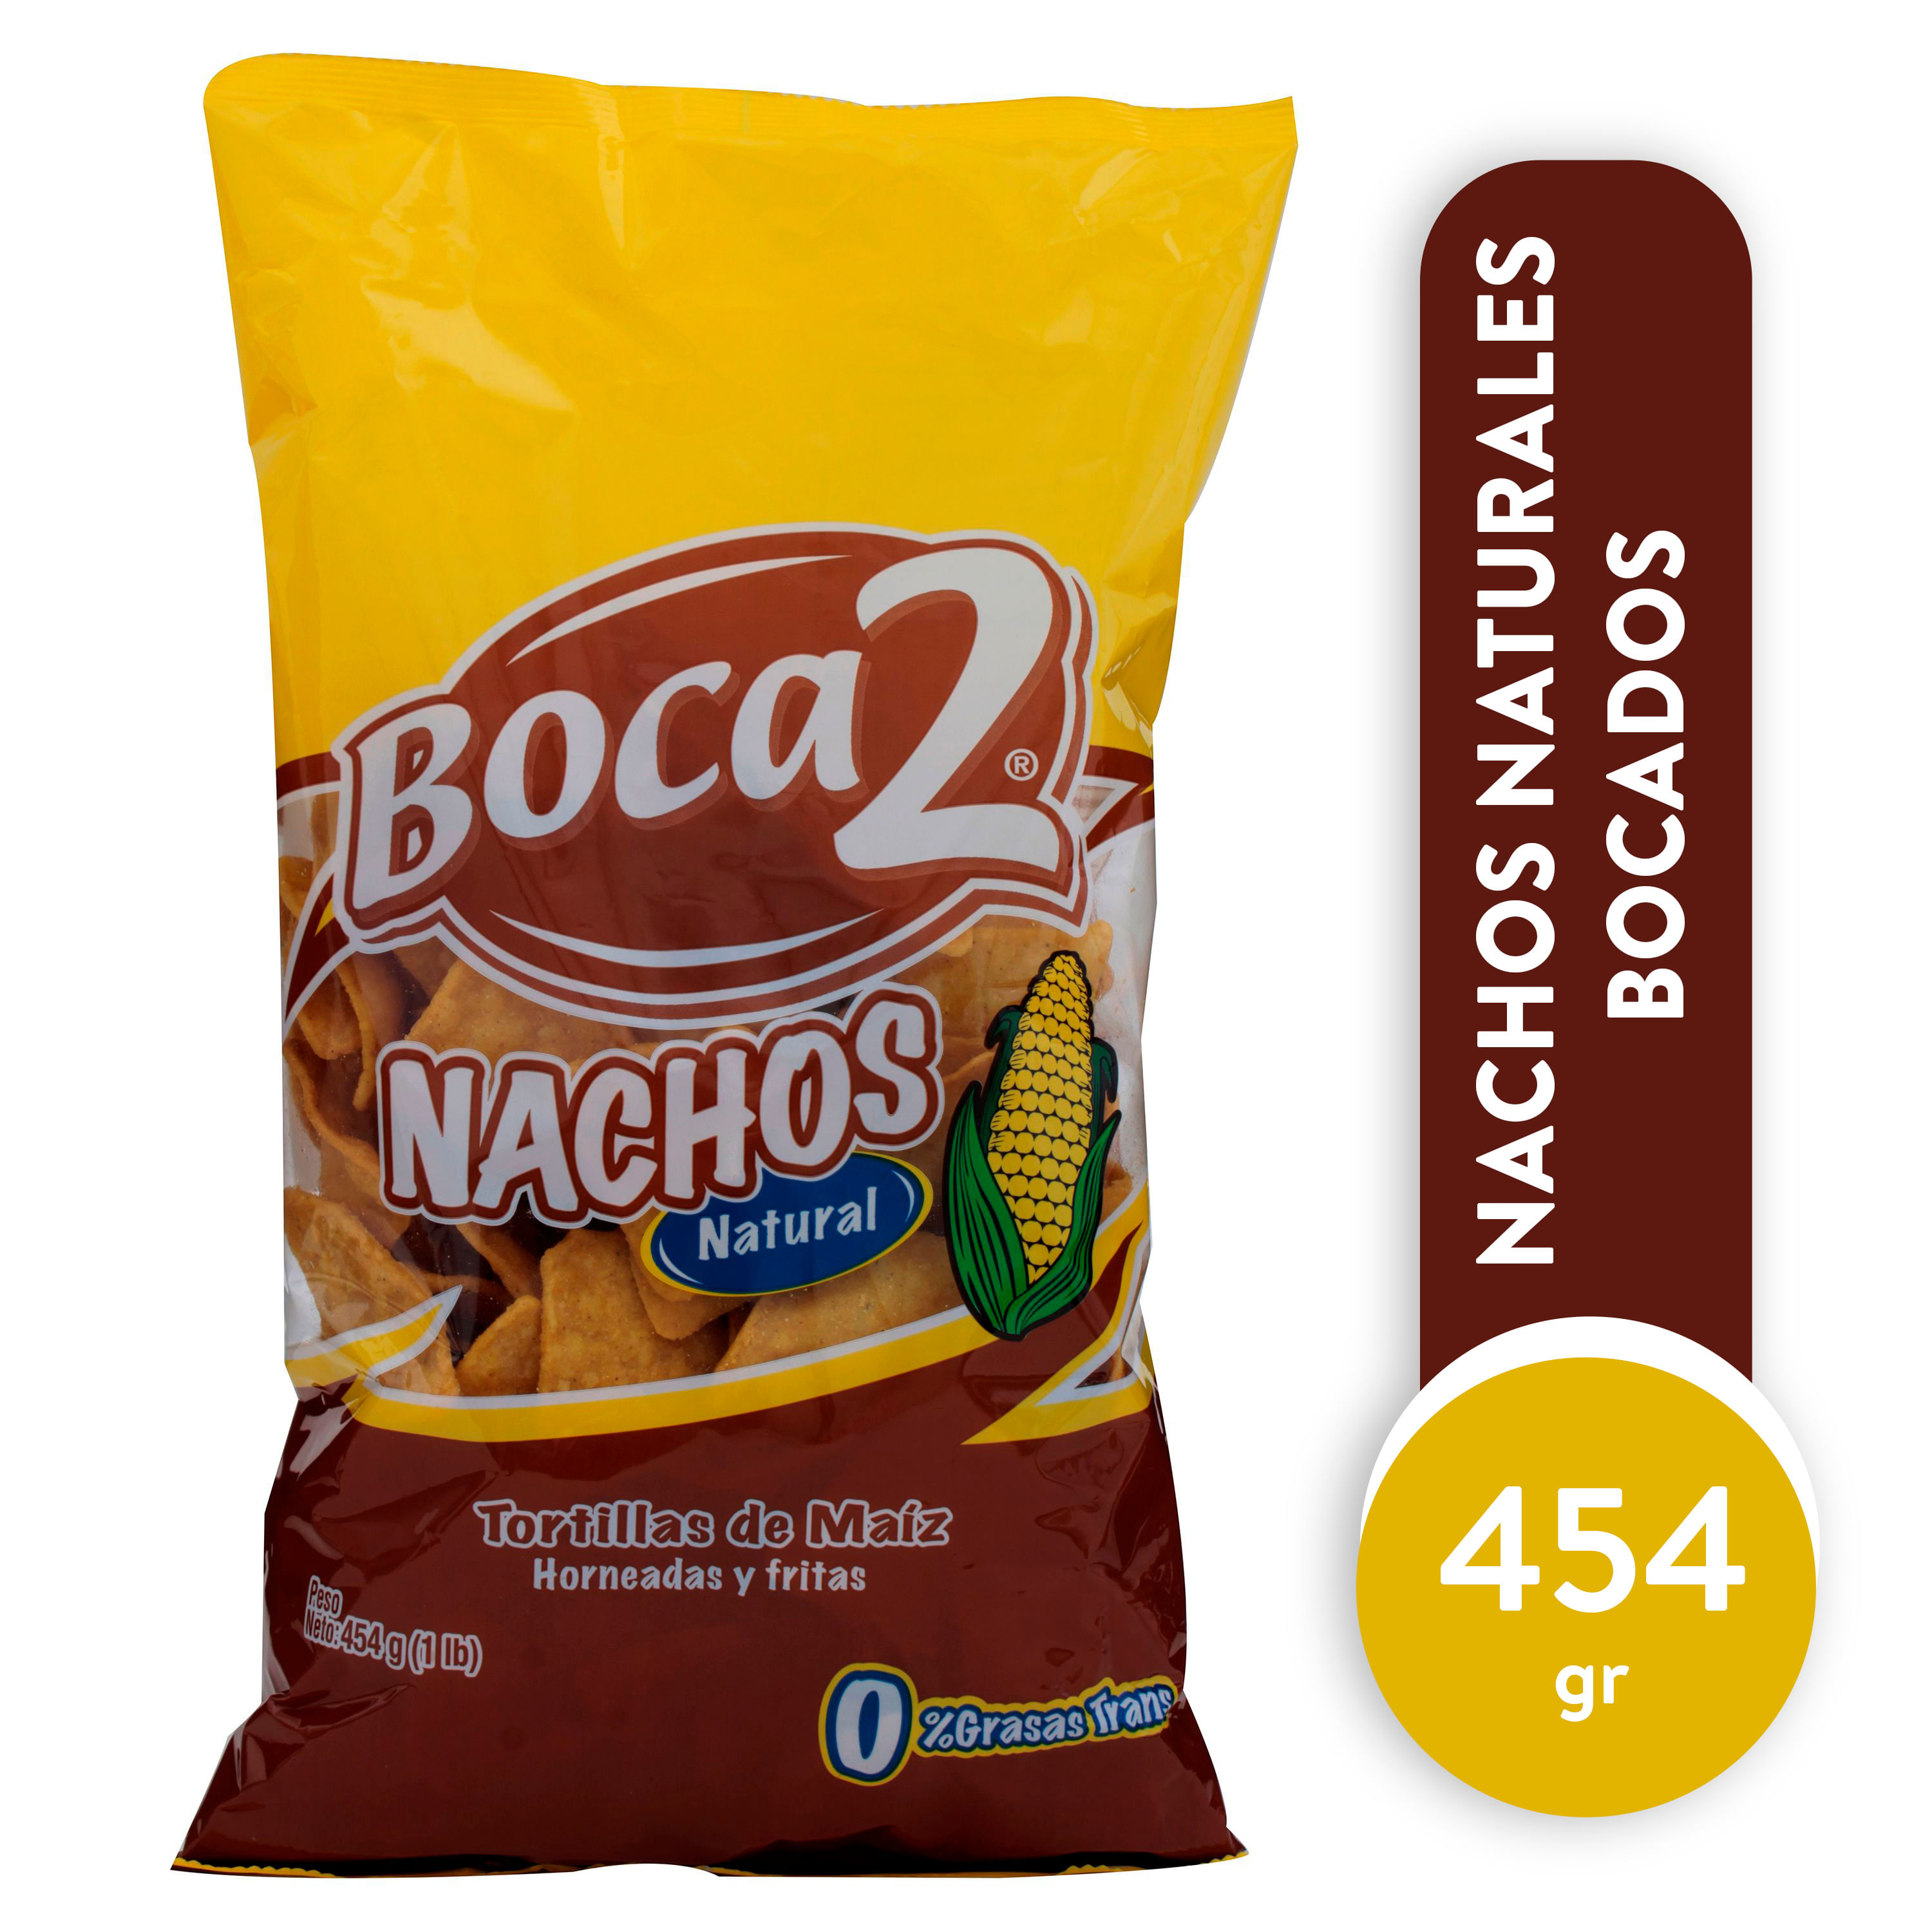 Snack-Boca2-Natural-453-6gr-1-28644